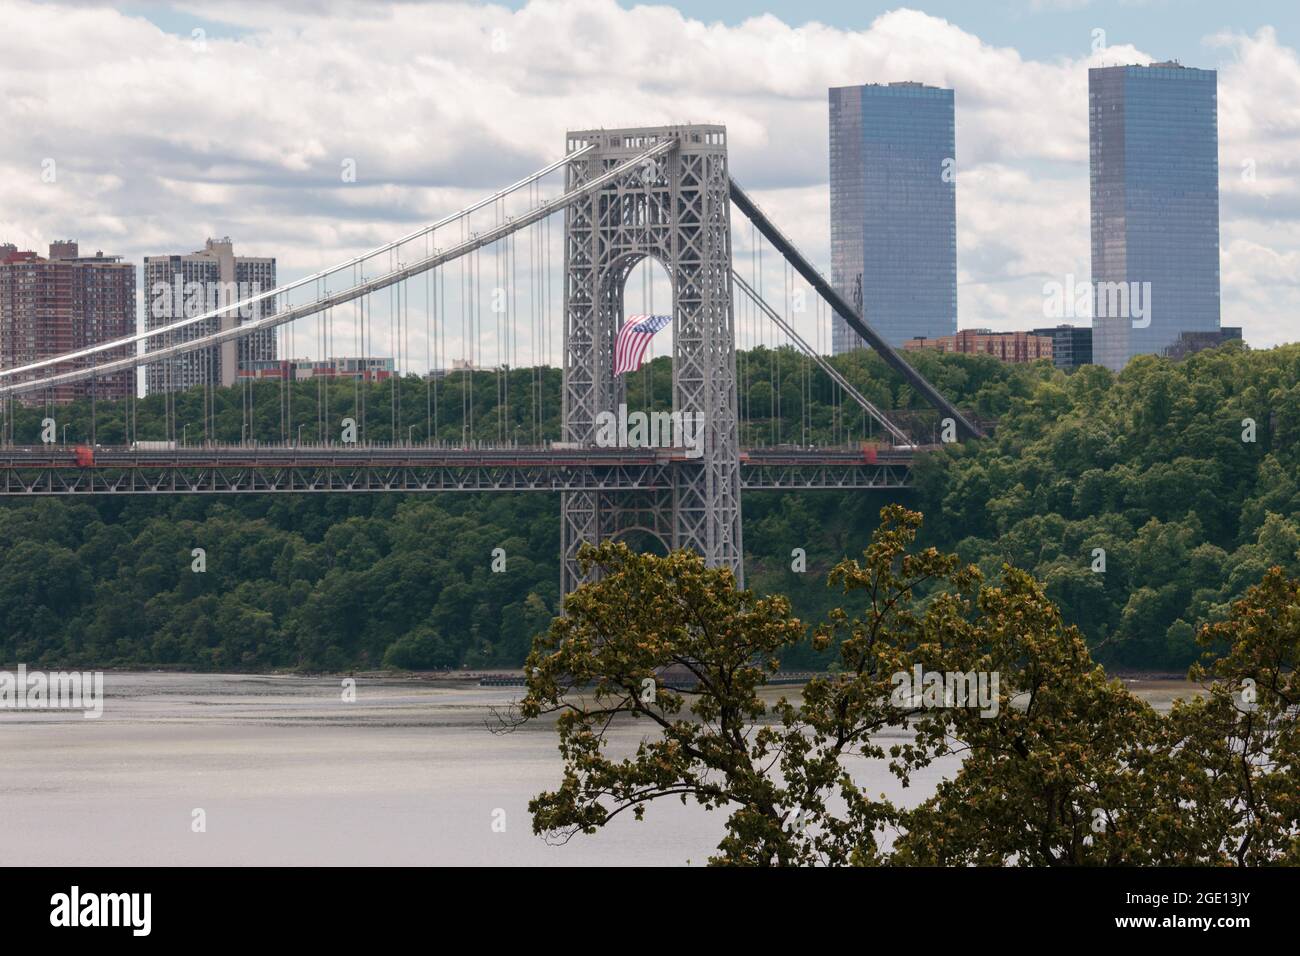 Un drapeau américain est suspendu de la tour de suspension latérale du New Jersey du pont George Washington, un pont suspendu à double pont reliant Manhattan Banque D'Images